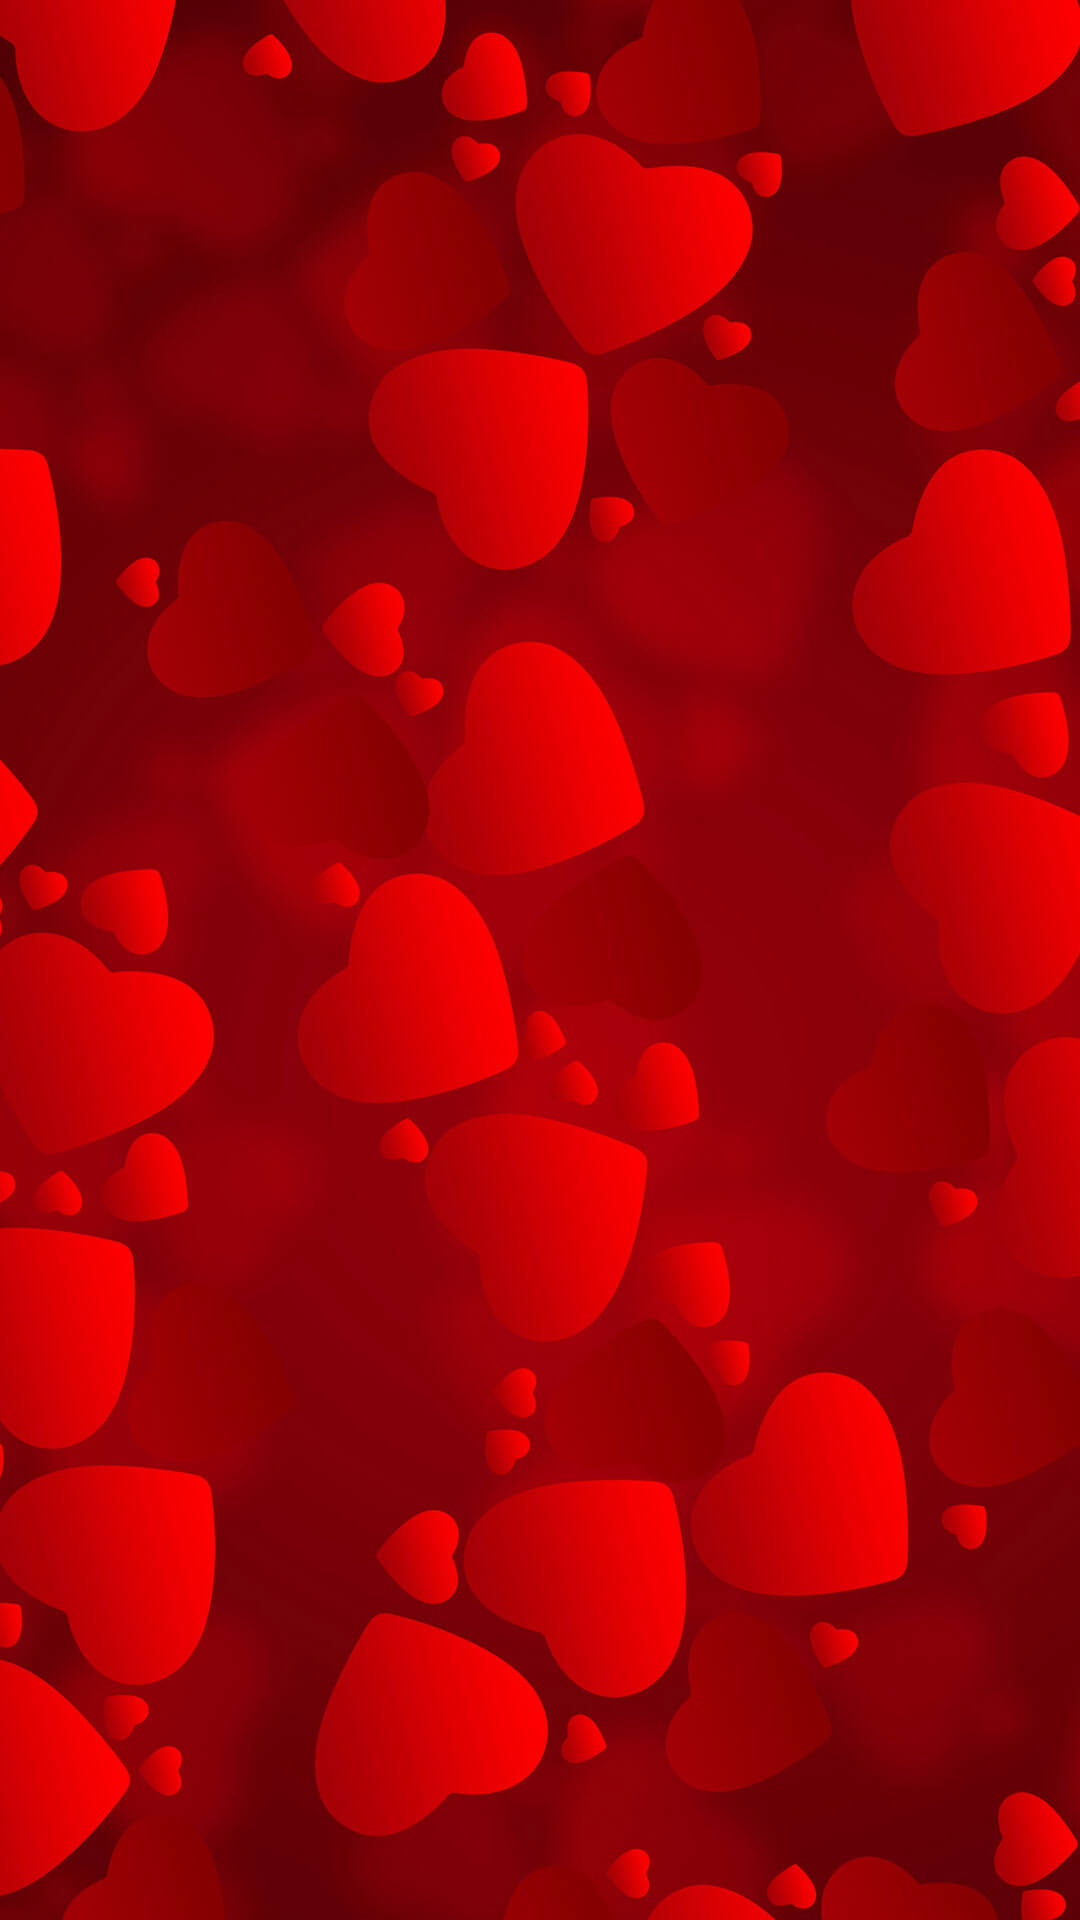 sfondi per iphone full hd,rosso,cuore,petalo,modello,san valentino